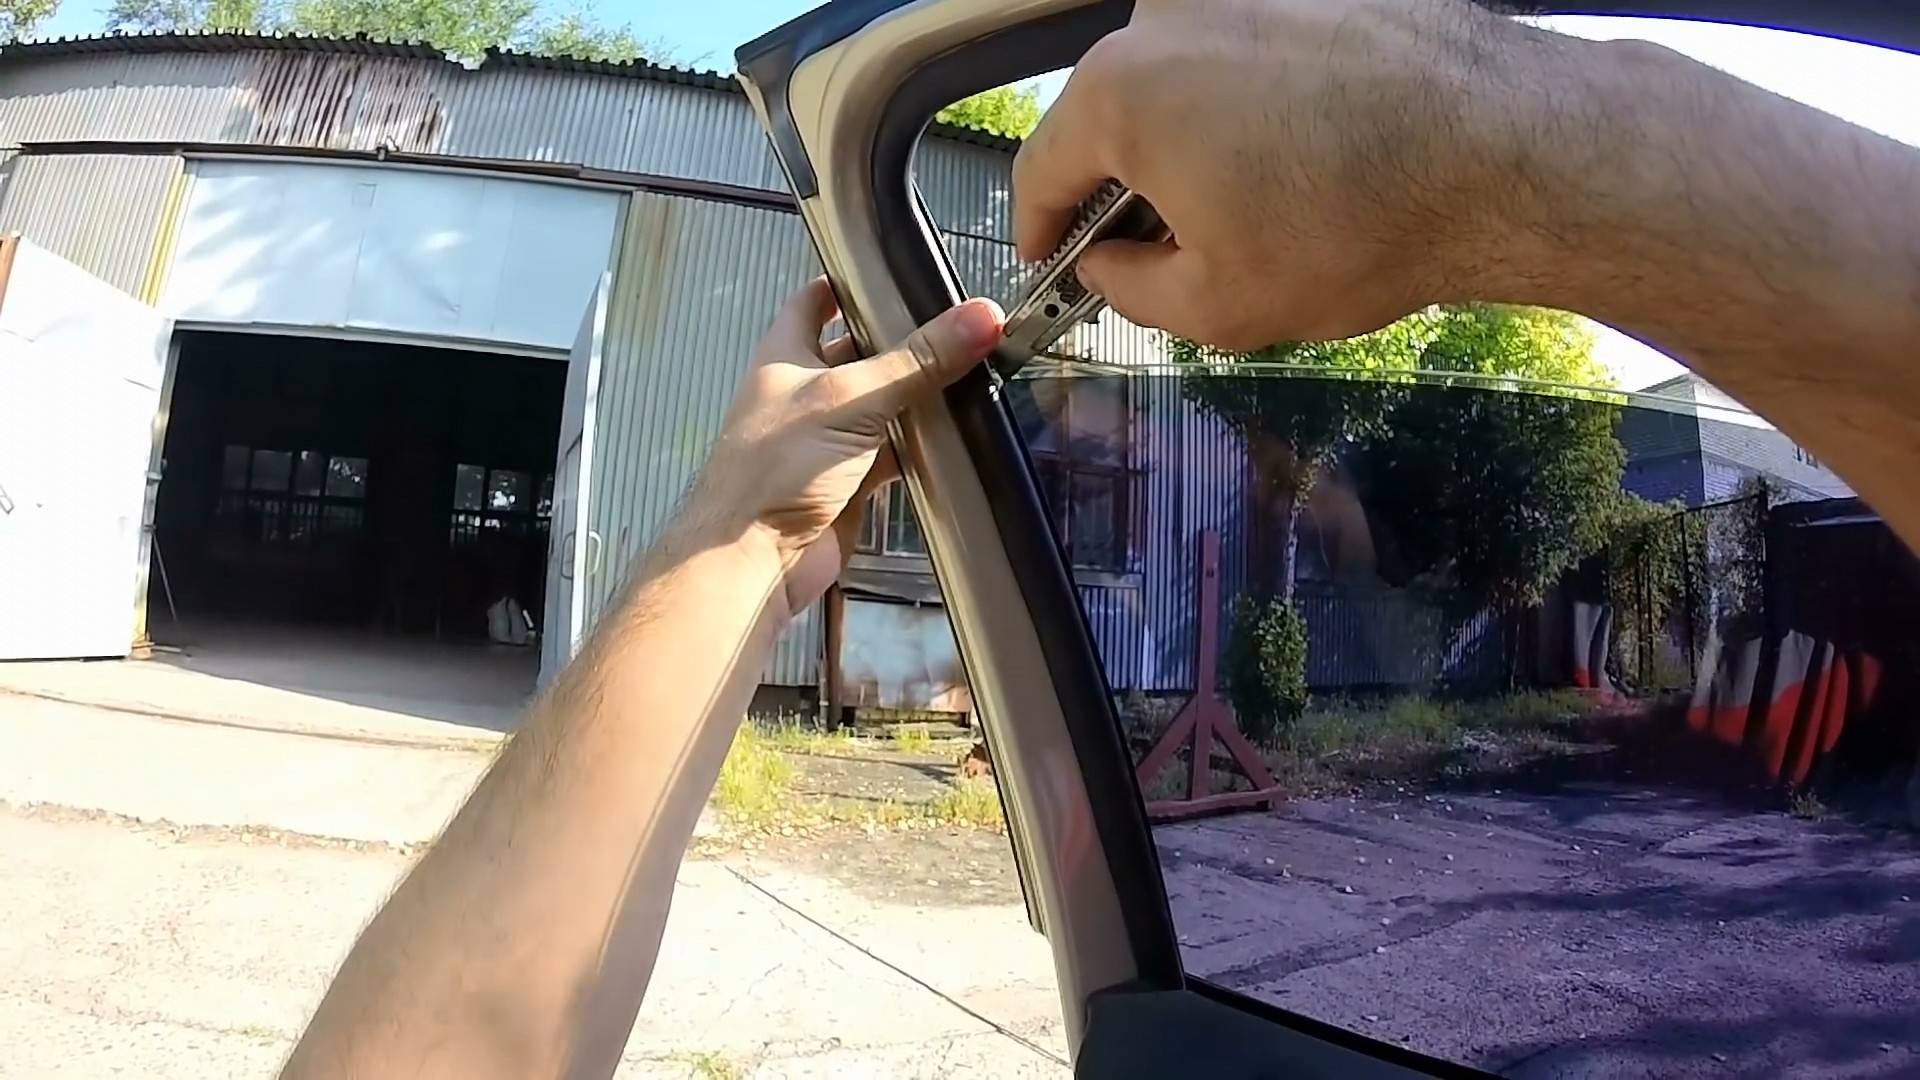 Как снять тонировку со стекла: способы убрать старую пленку с автомобиля самому легко и быстро, а также снятие с заднего с обогревом